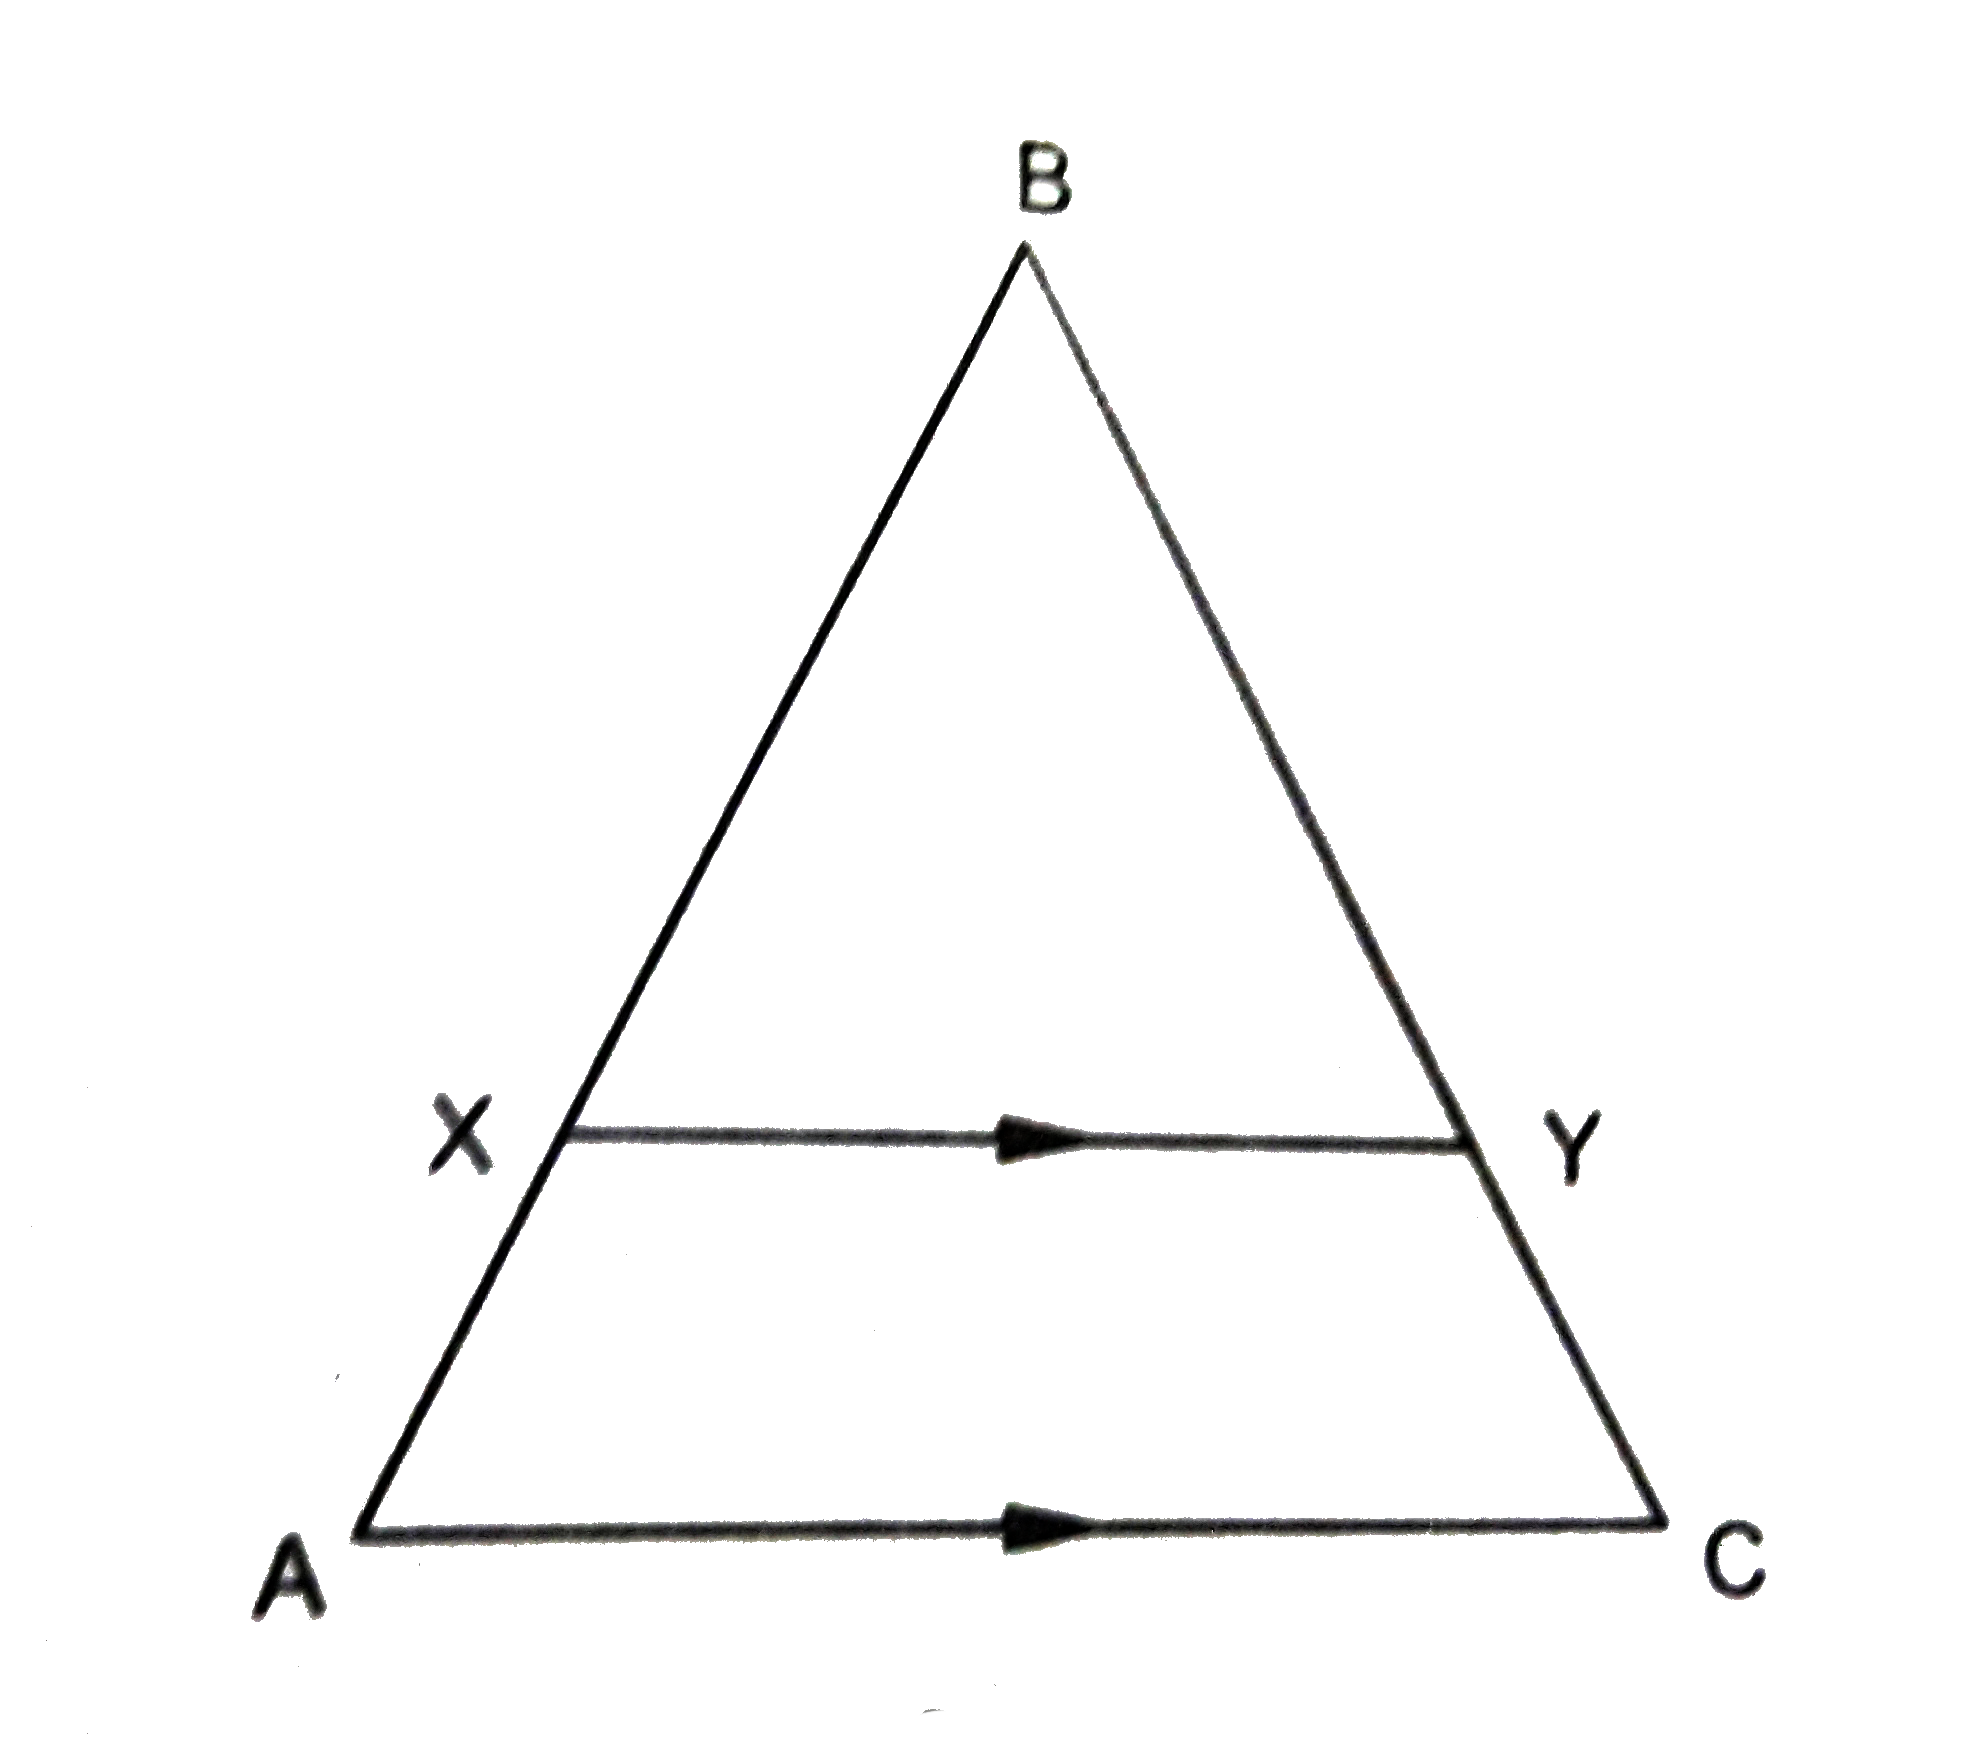 चित्र 2 में, XY || AC इस प्रकार है कि XY त्रिभुज ABC को दो बराबर क्षेत्रफलों में बाँटता है। अनुपात (AX)/(AB) का मान ज्ञात कीजिए।